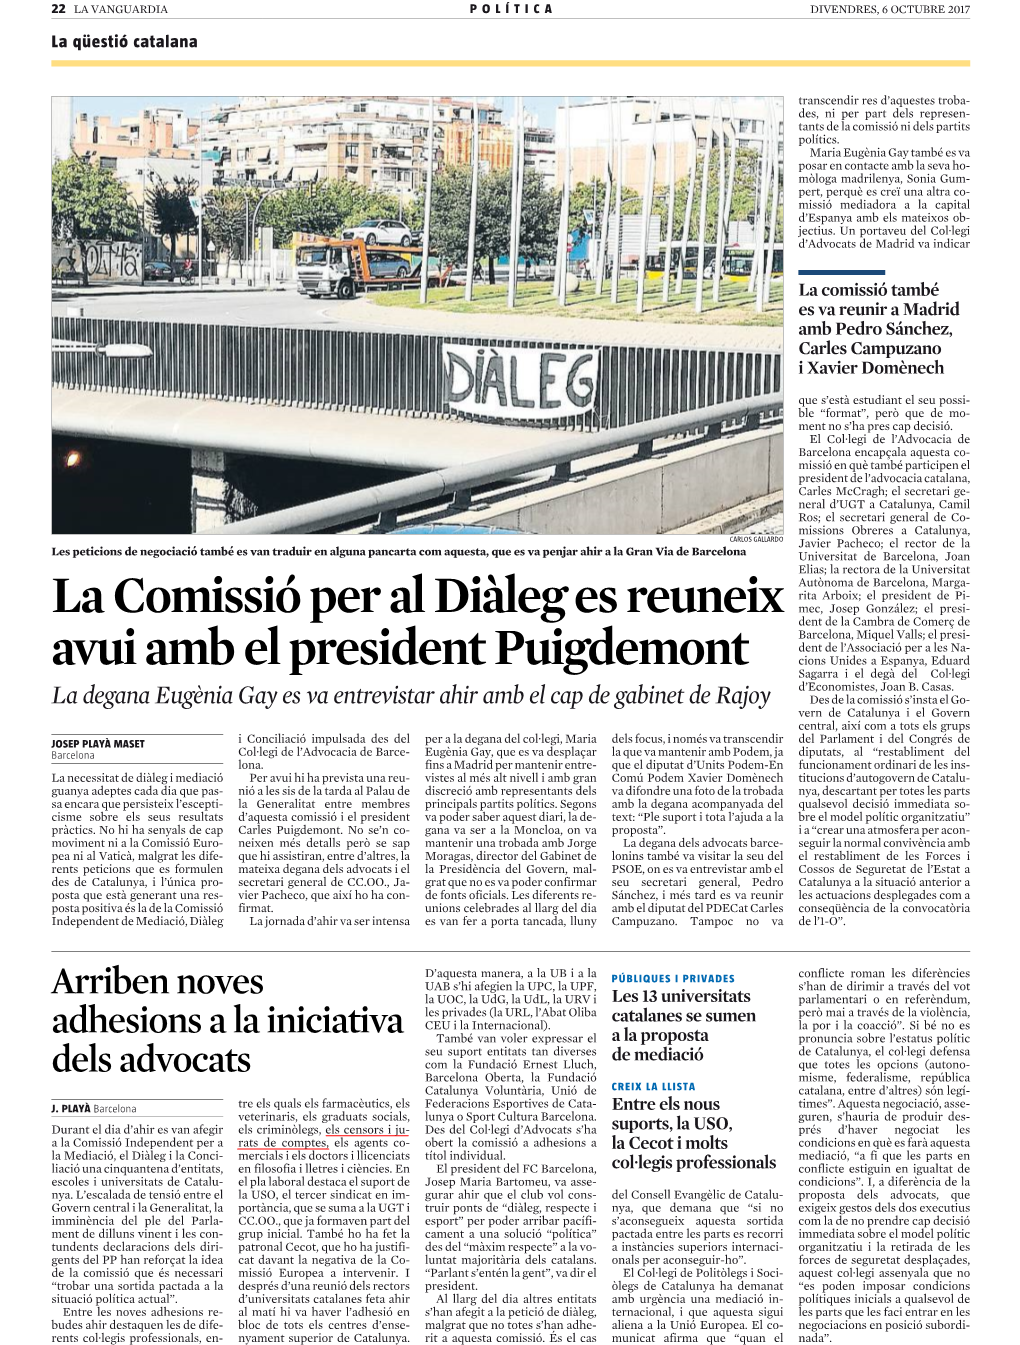 La Comissió Per Al Diàleg Es Reuneix Avui Amb El President Puigdemont